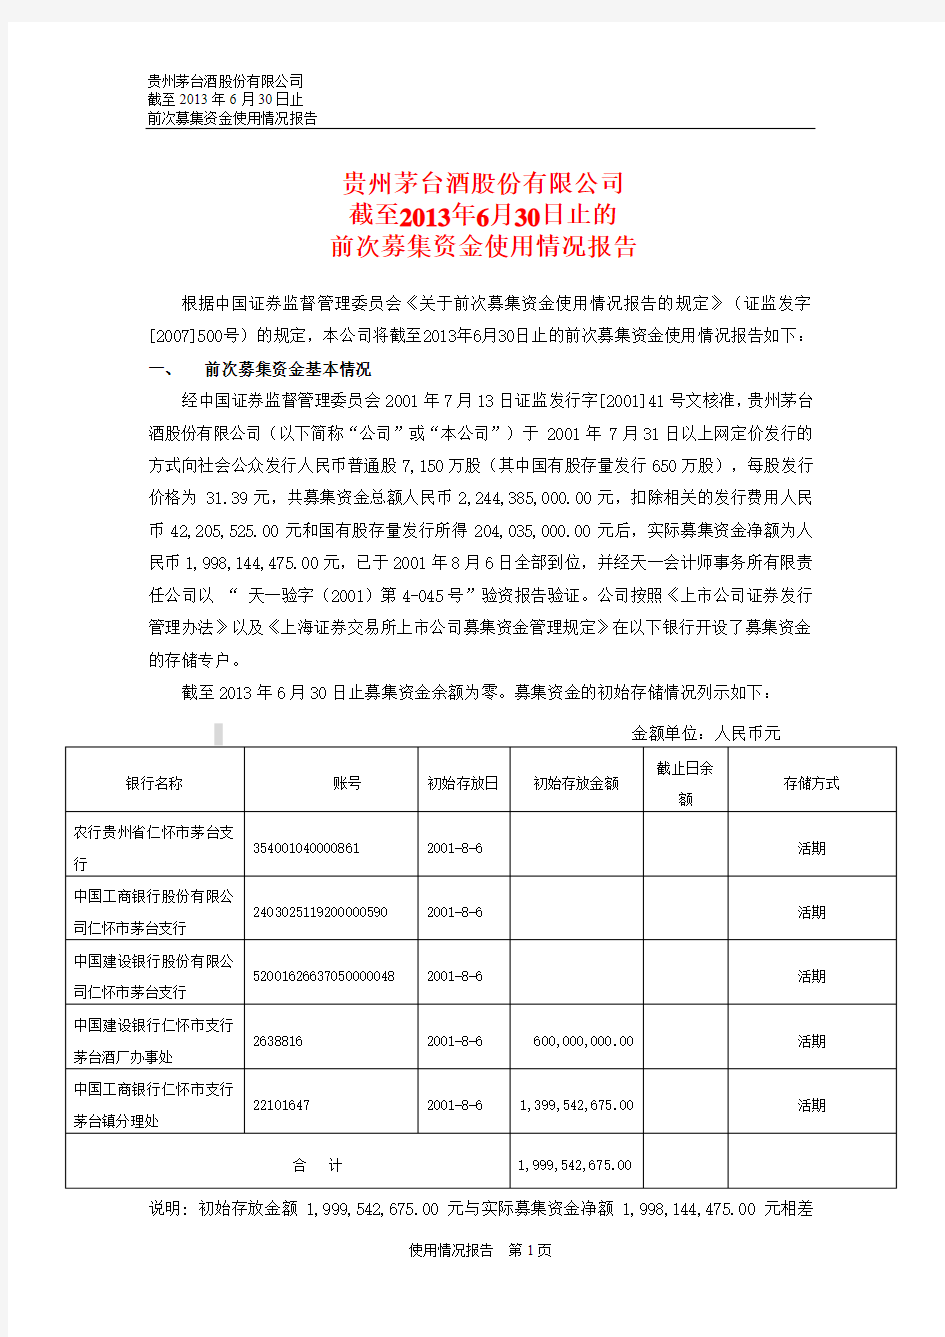 贵州茅台截至2013年6月30日止的前次募集资金使用情况报告(2014年3月25日披